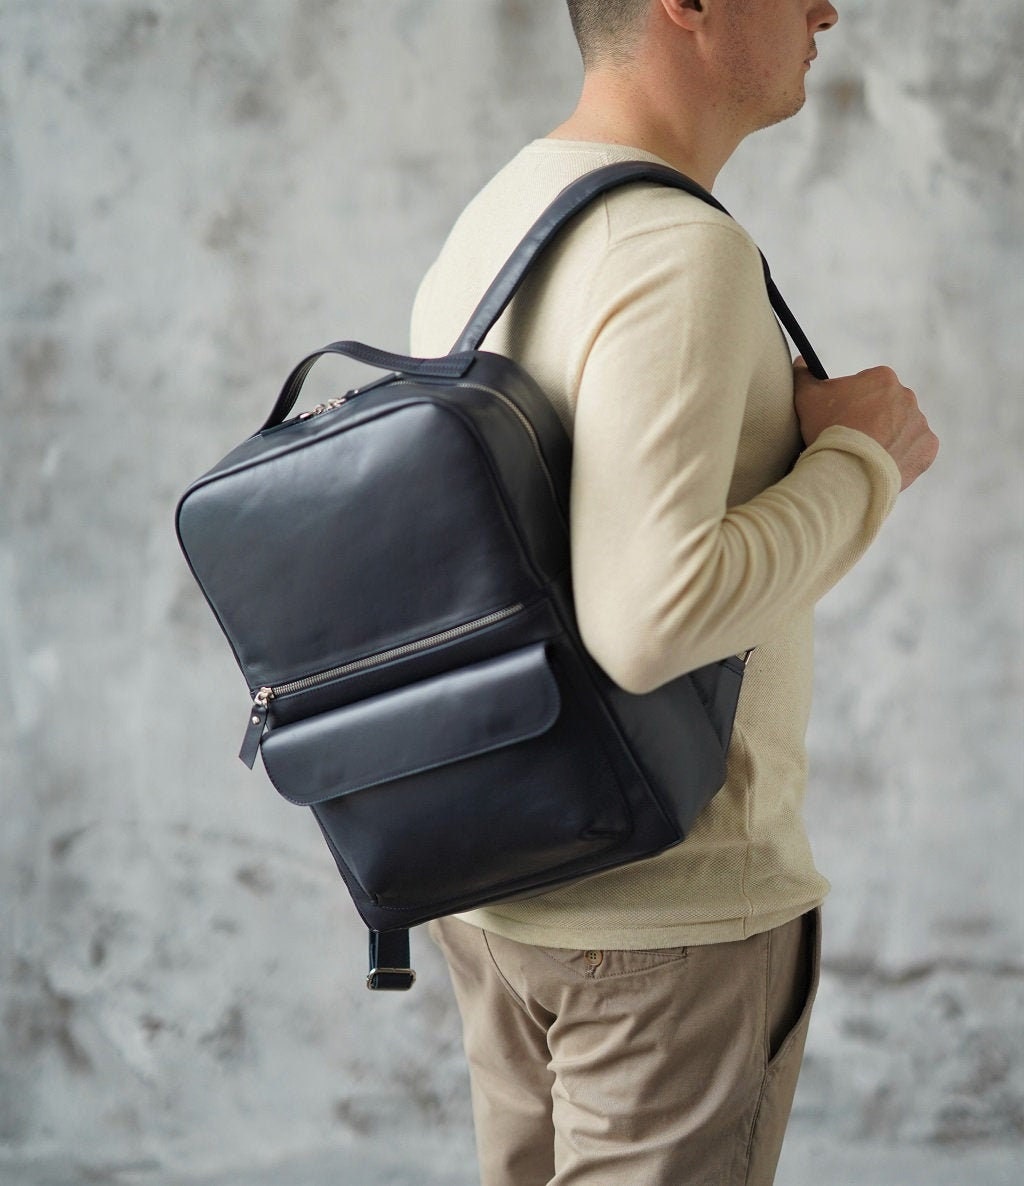 Leather backpack men for business Travel backpack men Laptop | Etsy